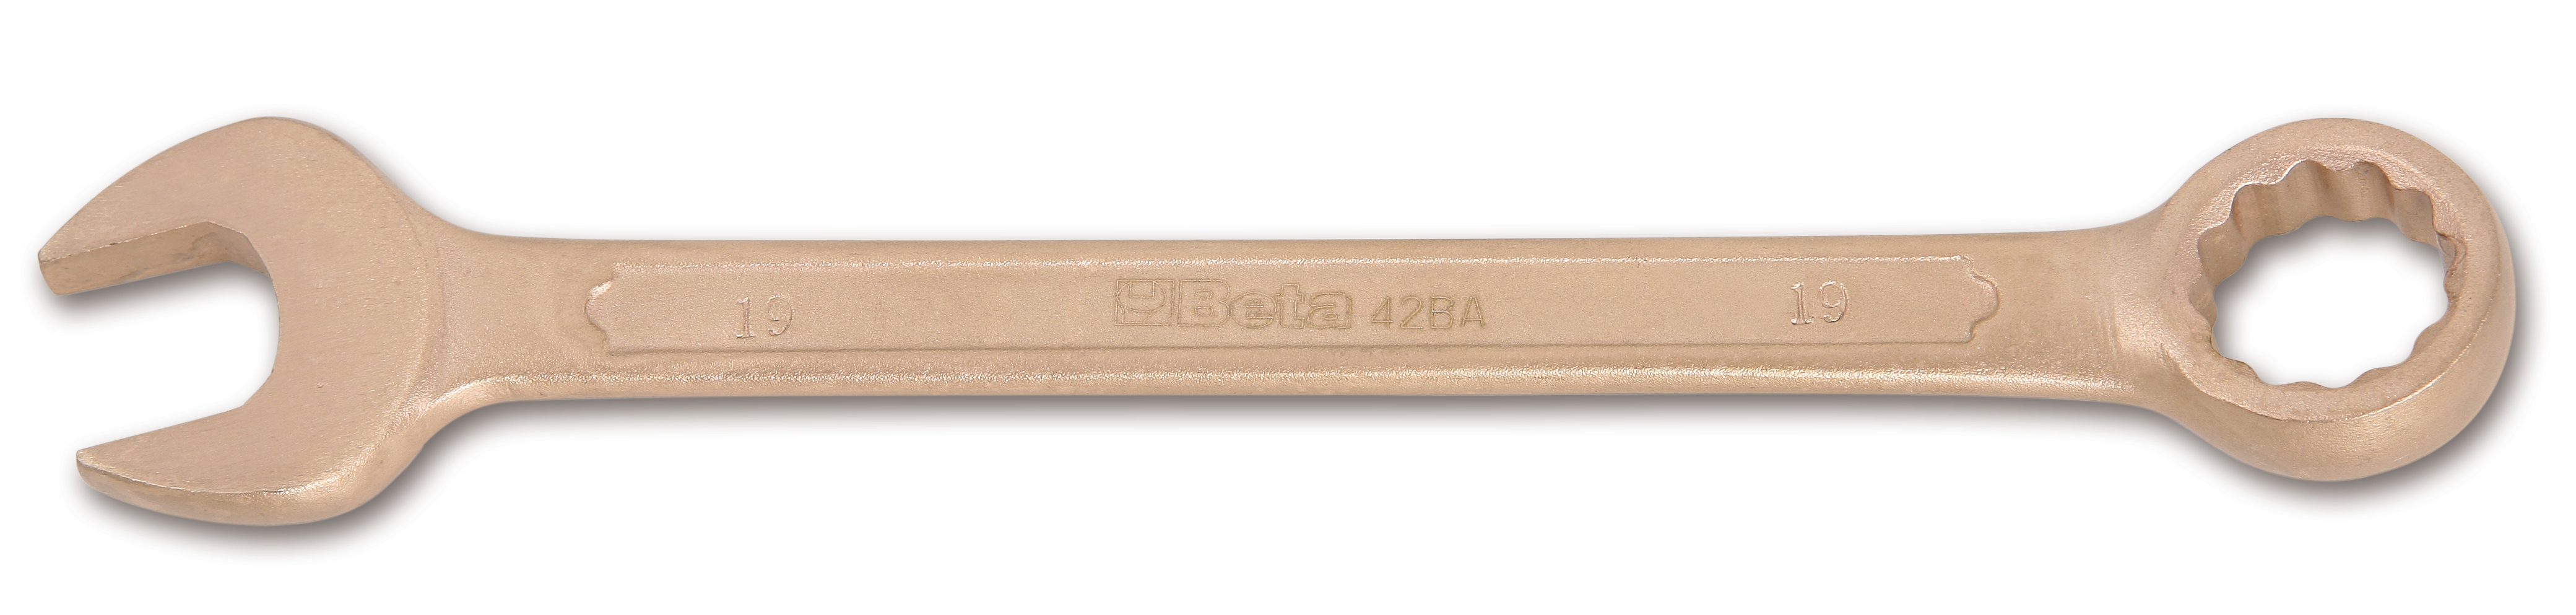 Γερμανοπολύγωνo 36mm Αντισπινθηρικό 42BA BETA